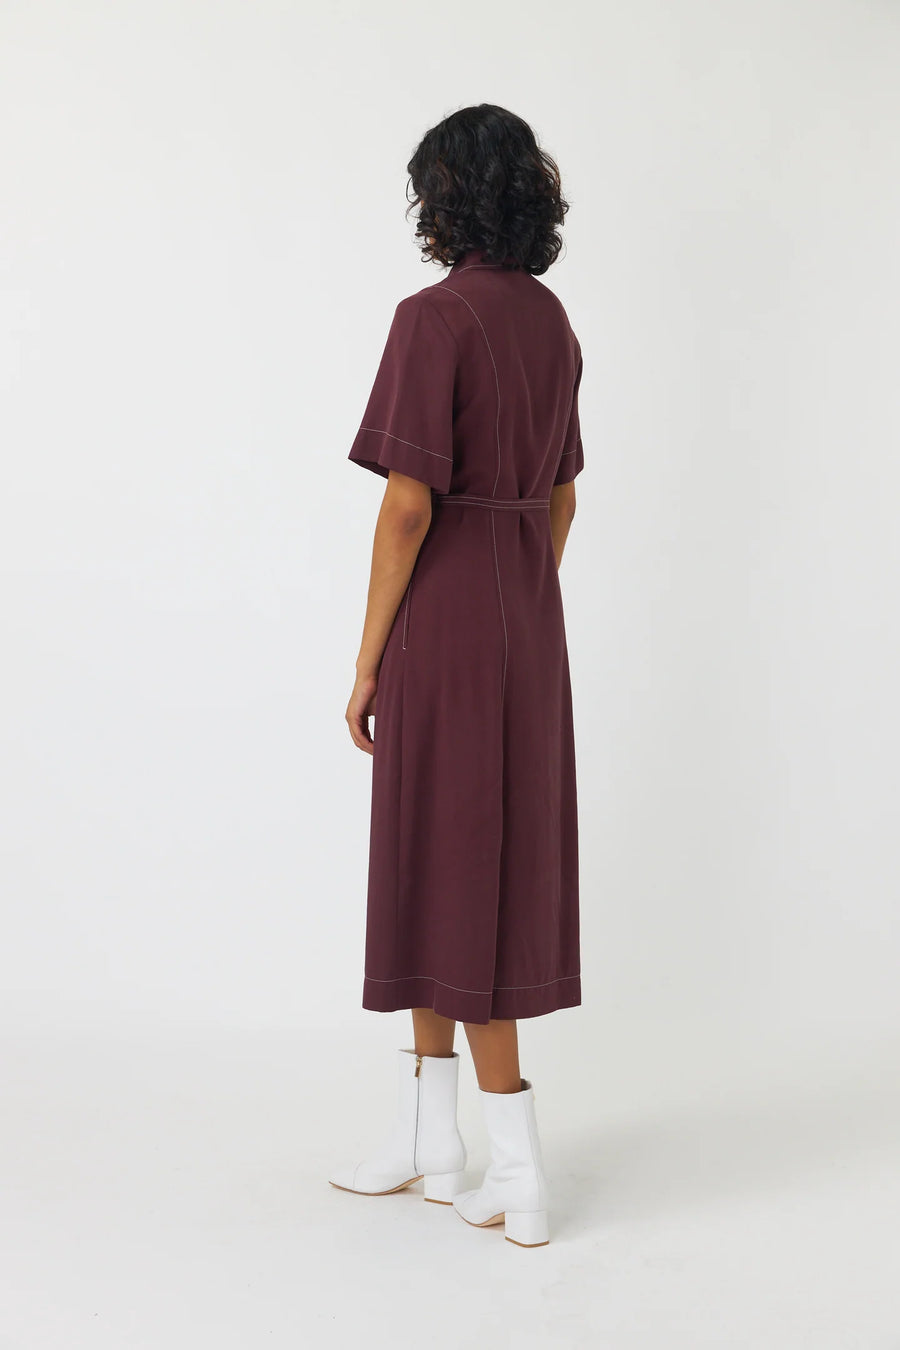 Kate Sylvester | Bernadette Shirt Dress